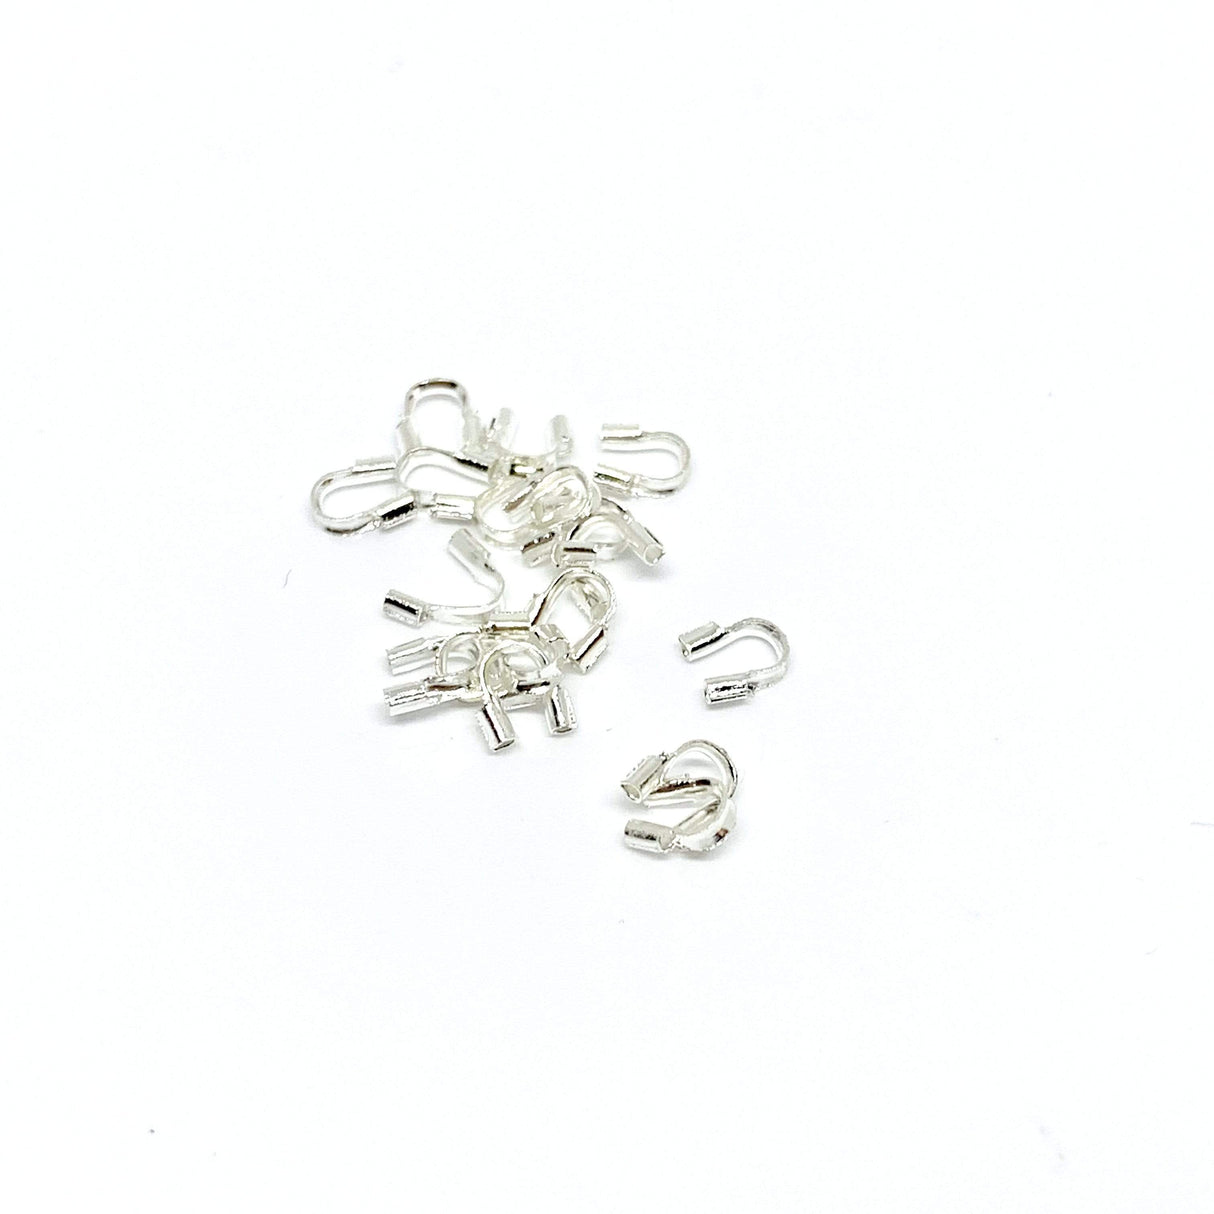 AL klemøjer og knudeskjuler Wire beskyttere, Sterling sølv/925, 6 stk